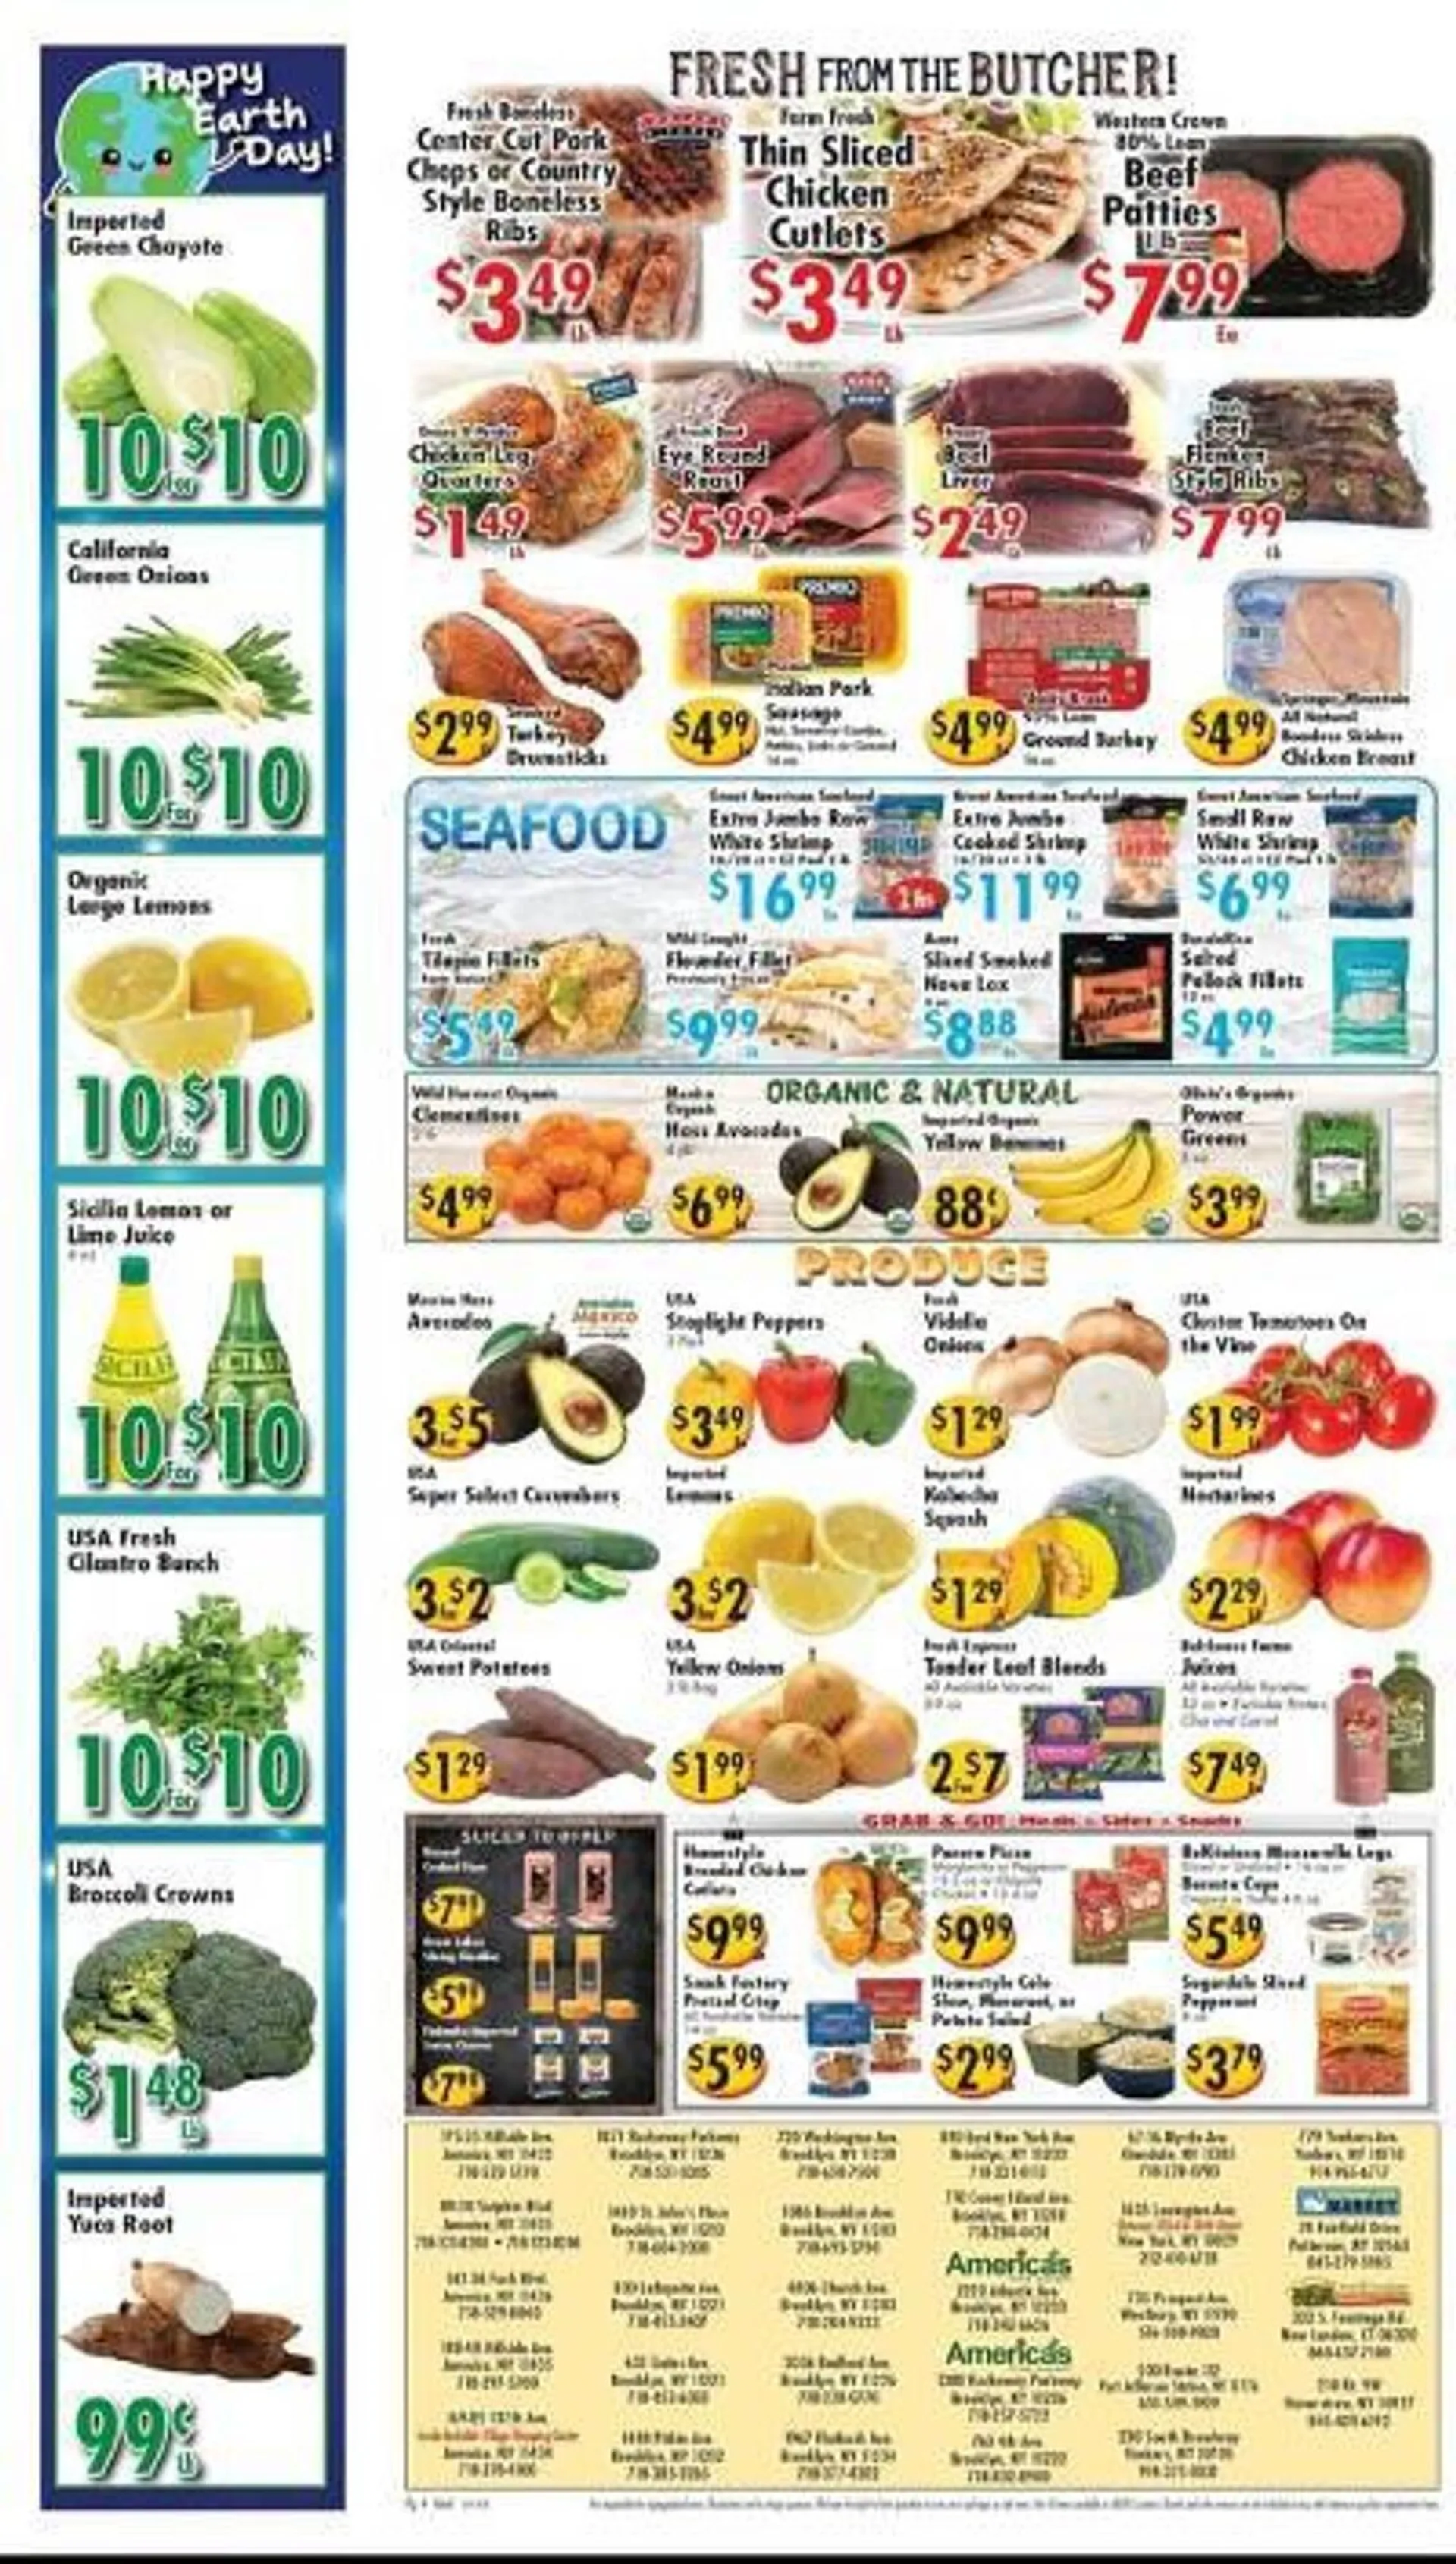 Ideal Food Basket Weekly Ad - 4